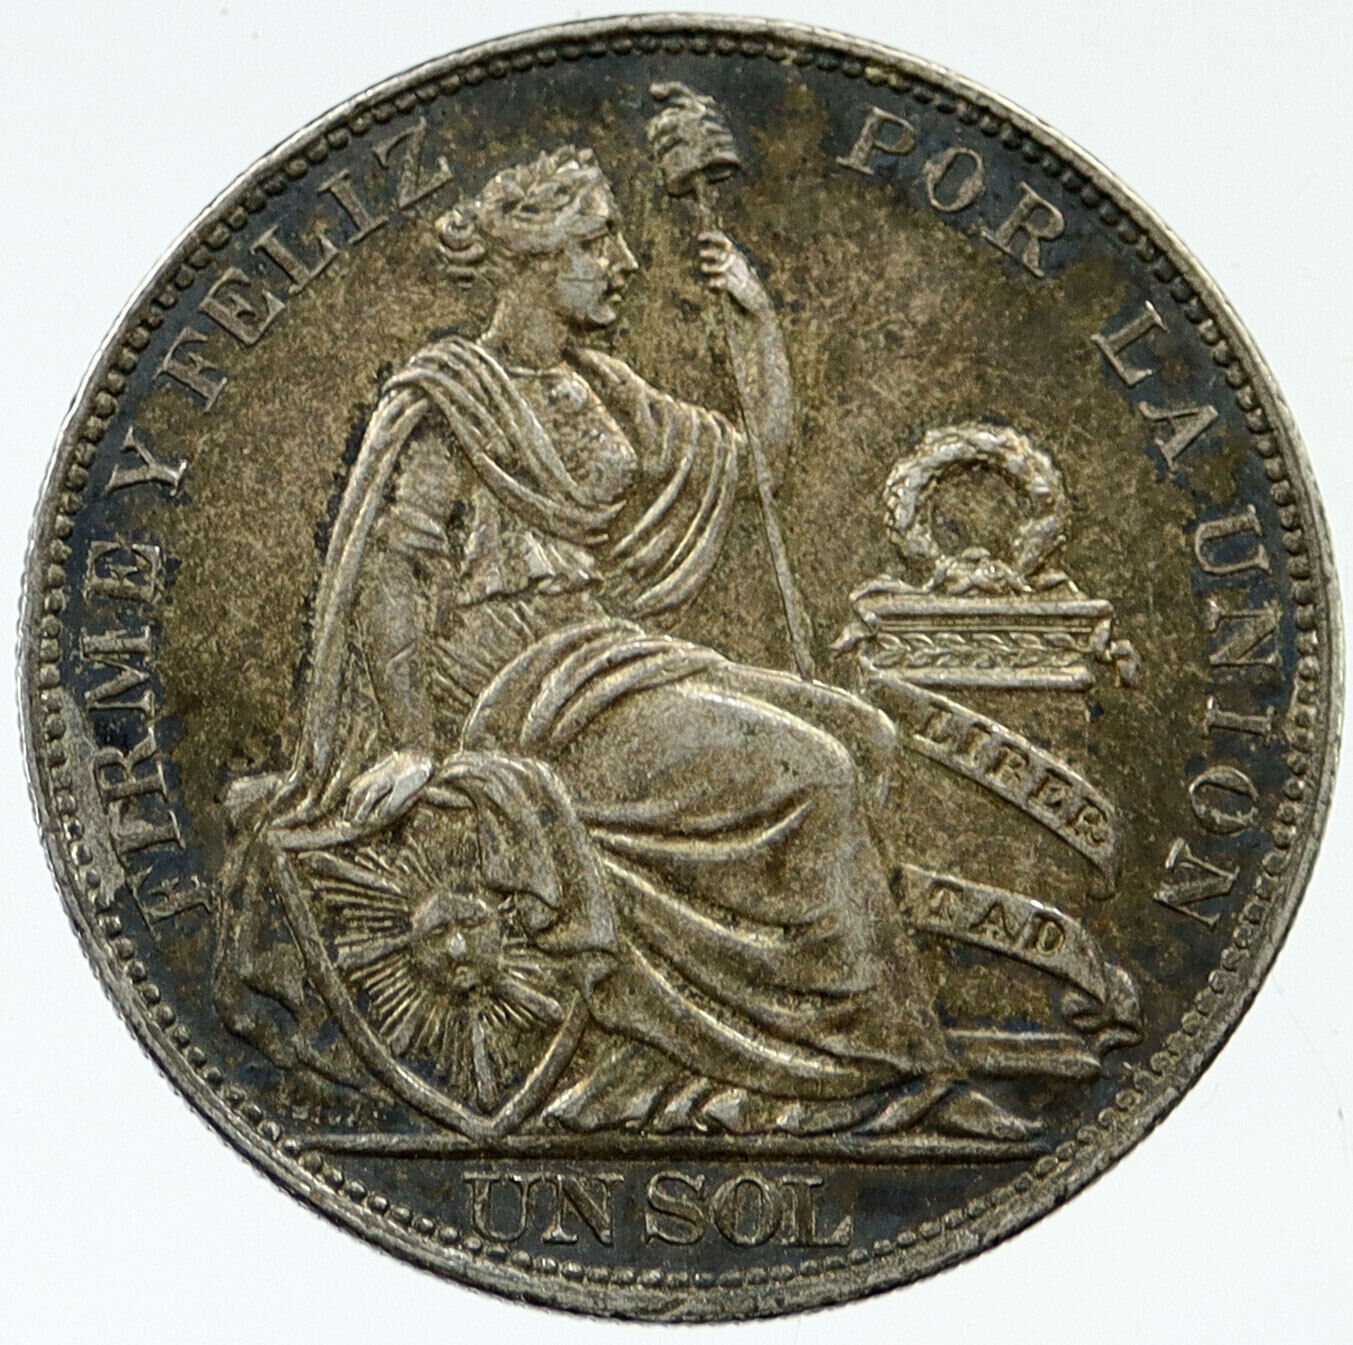 1914 PERU South America 1 SOL Antique BIG Original Silver Peruvian Coin i116953